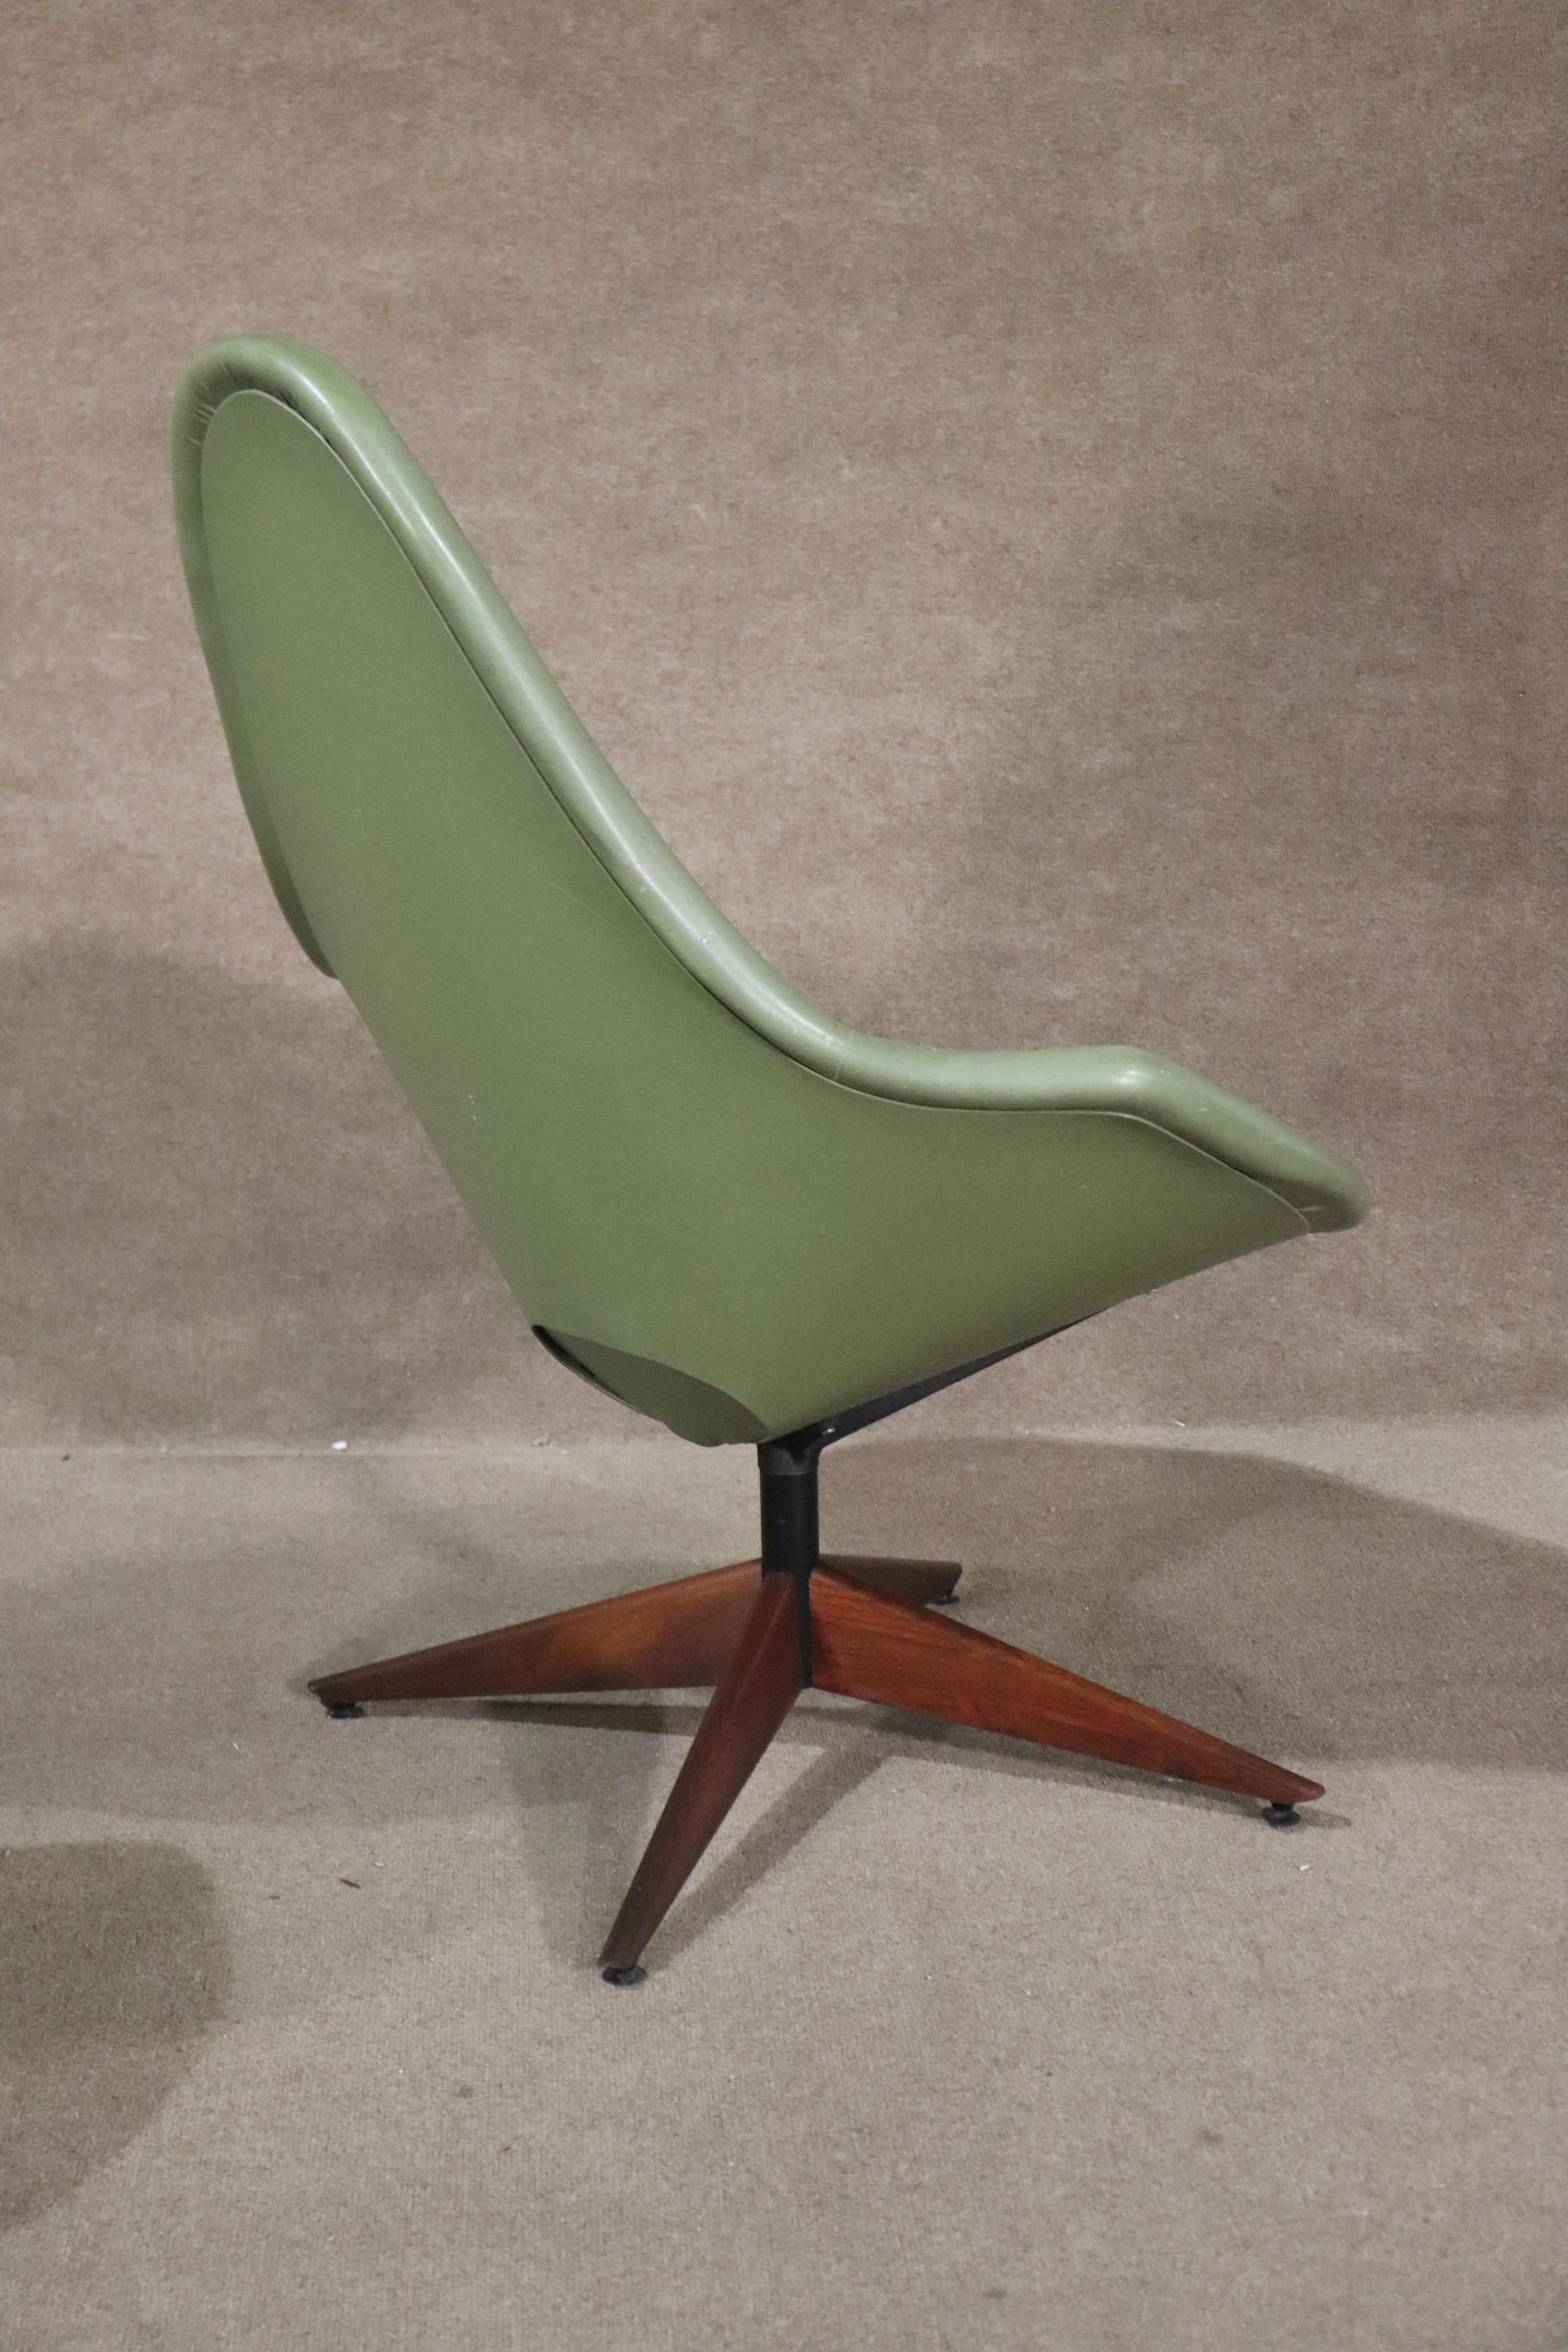 Moderner Drehstuhl aus der Mitte des Jahrhunderts von John Yellin für IV Chair Corp. Fun 1960er Jahre Atomzeitalter Stil Form Stuhl mit Hocker.
Bitte bestätigen Sie den Standort NY oder NJ